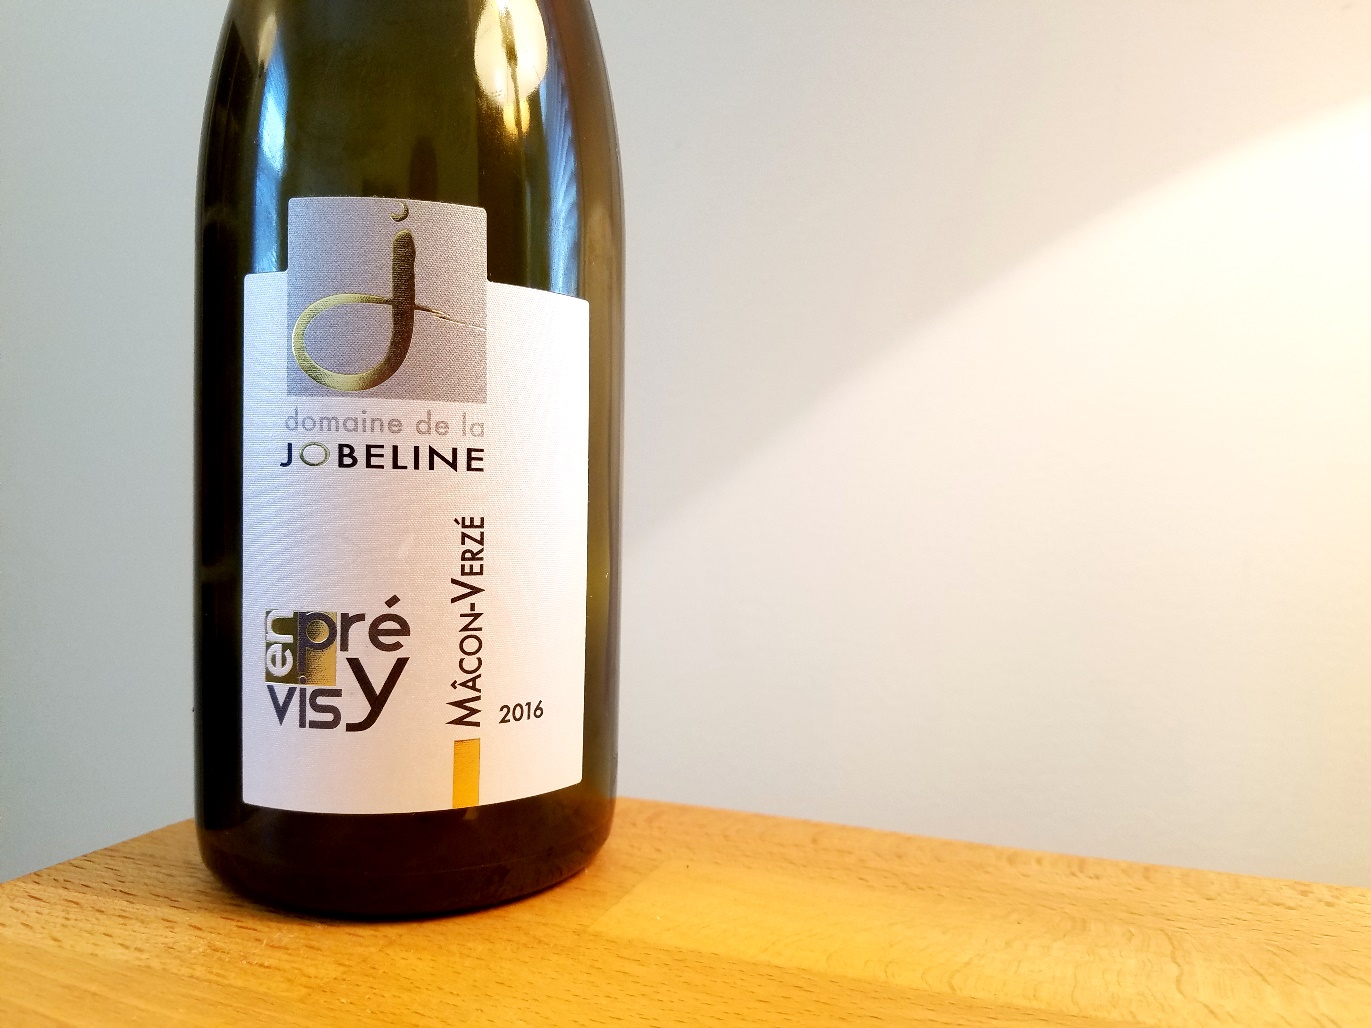 Domaine de la Jobeline, En Prévisy Mâcon-Verzé 2016, Burgundy, France, Wine Casual